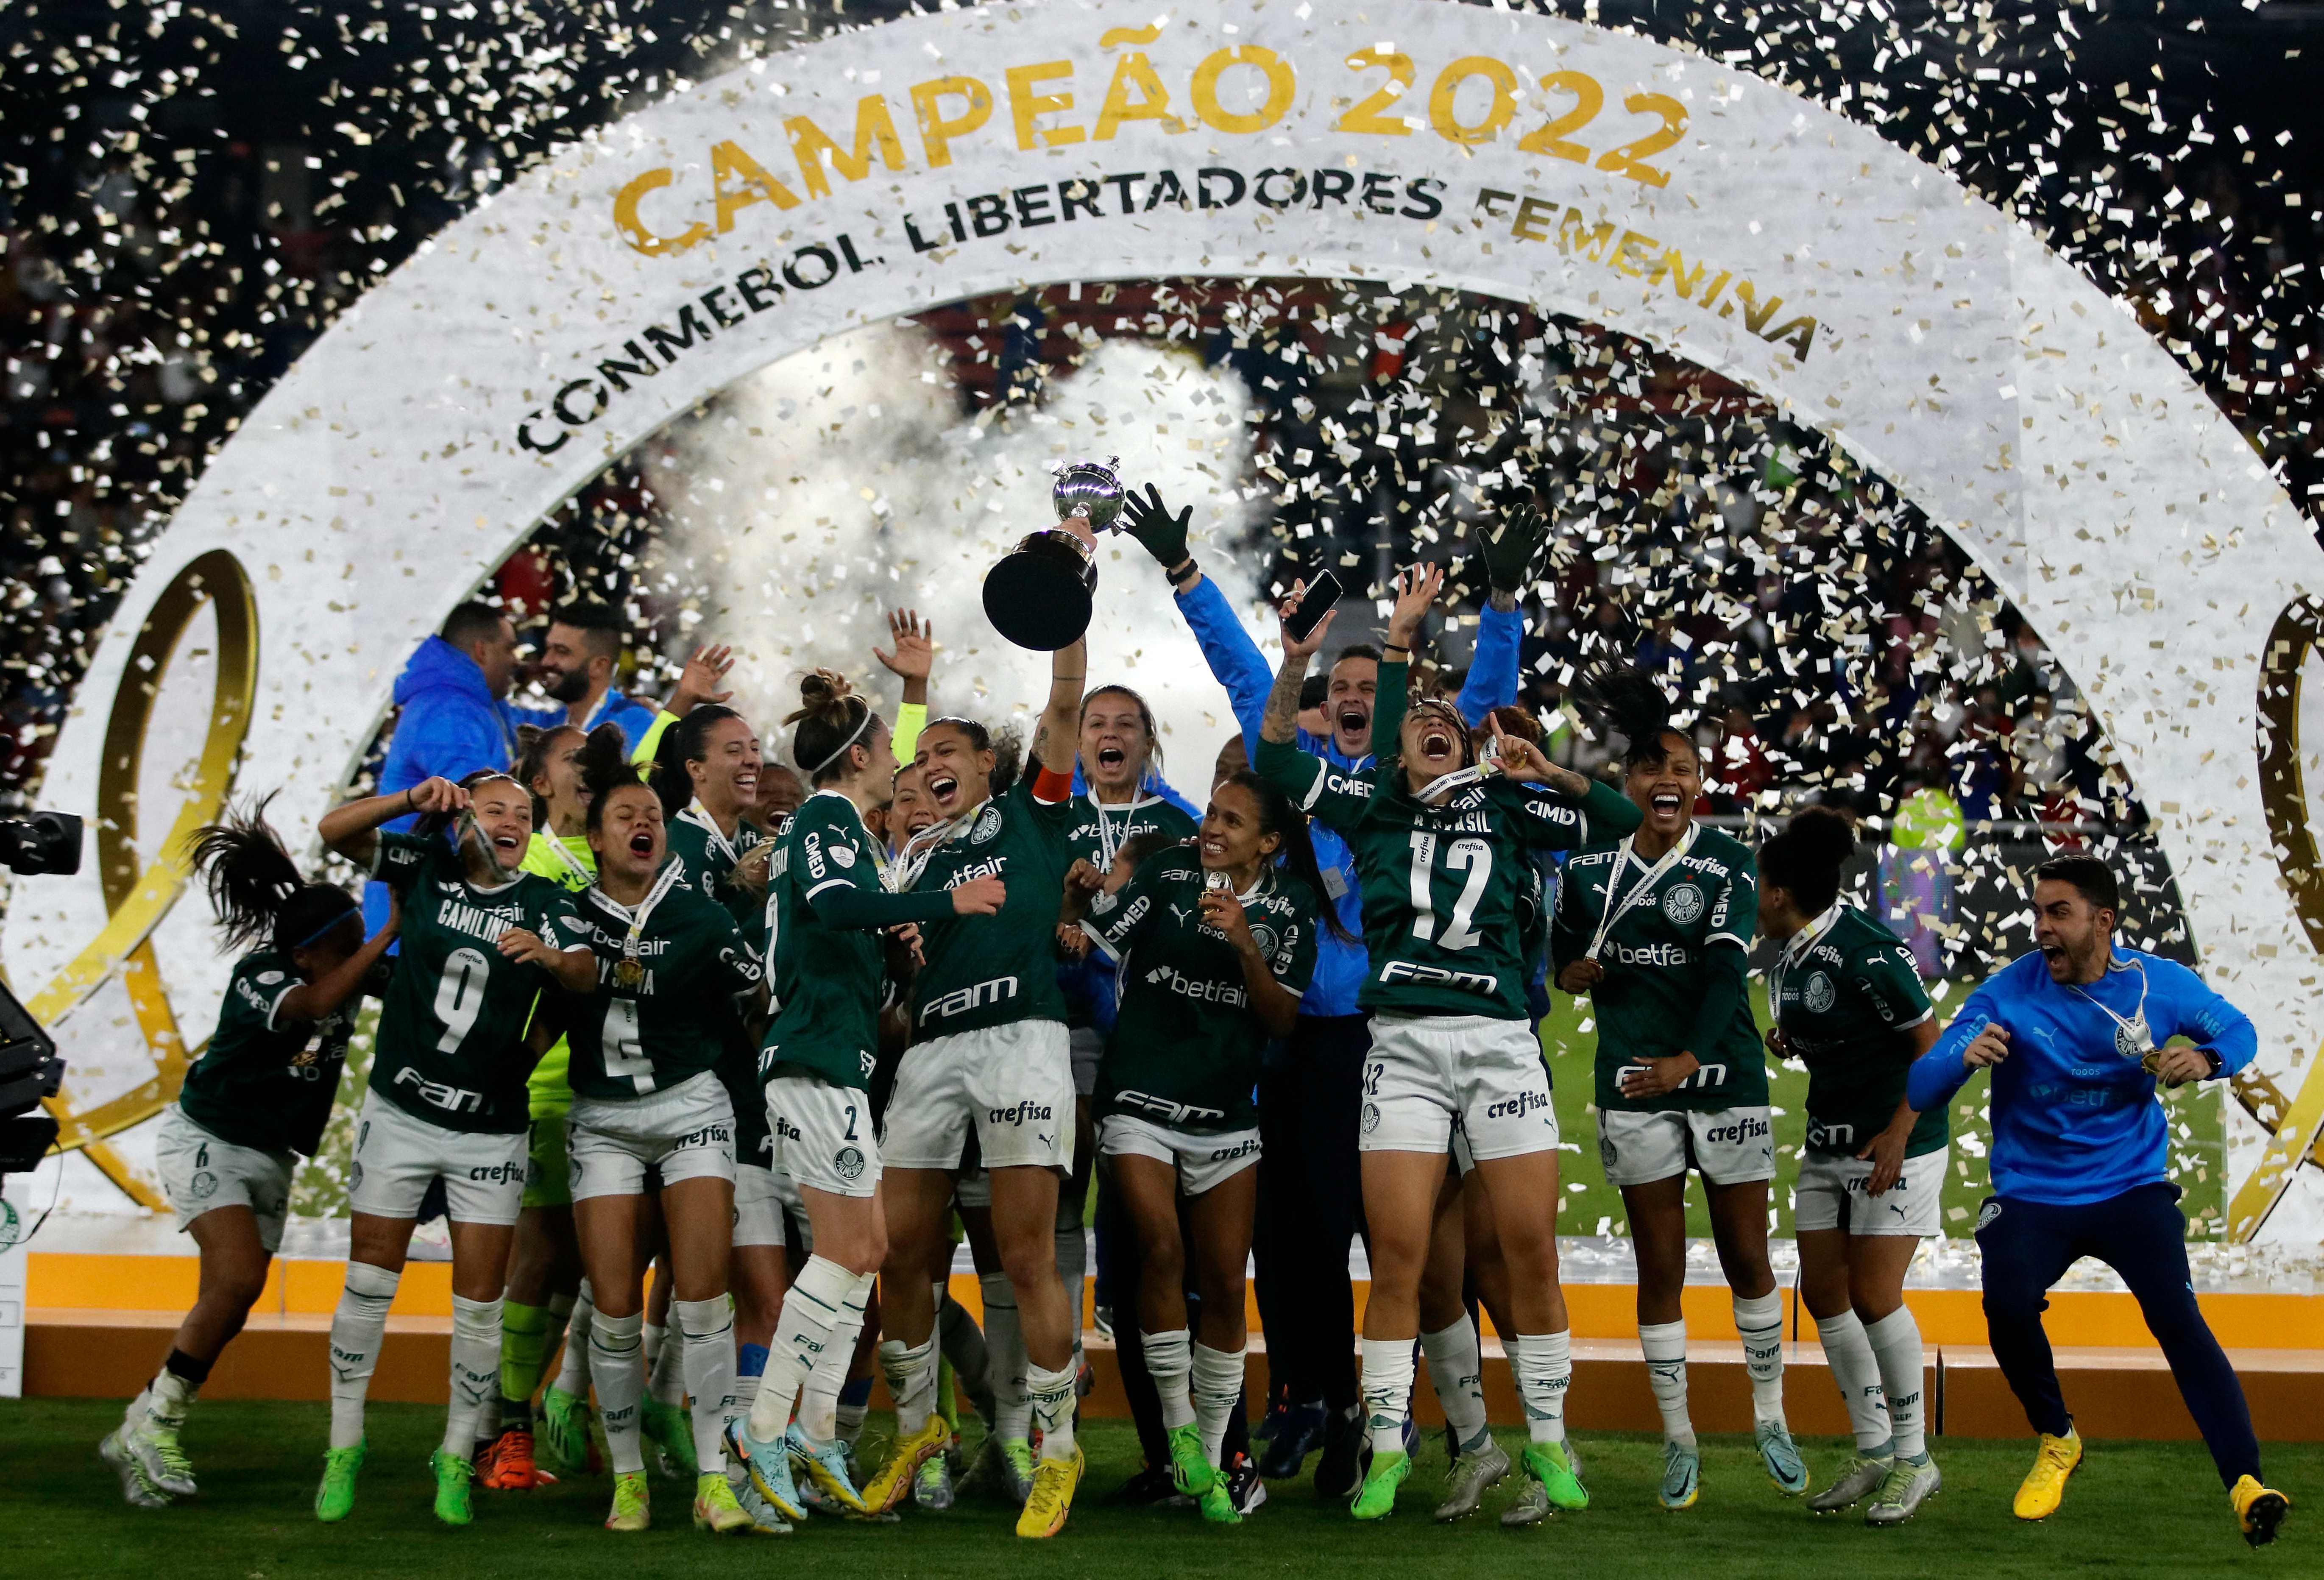 LIBERTADORES FEMININA, PALMEIRAS é campeão 2022